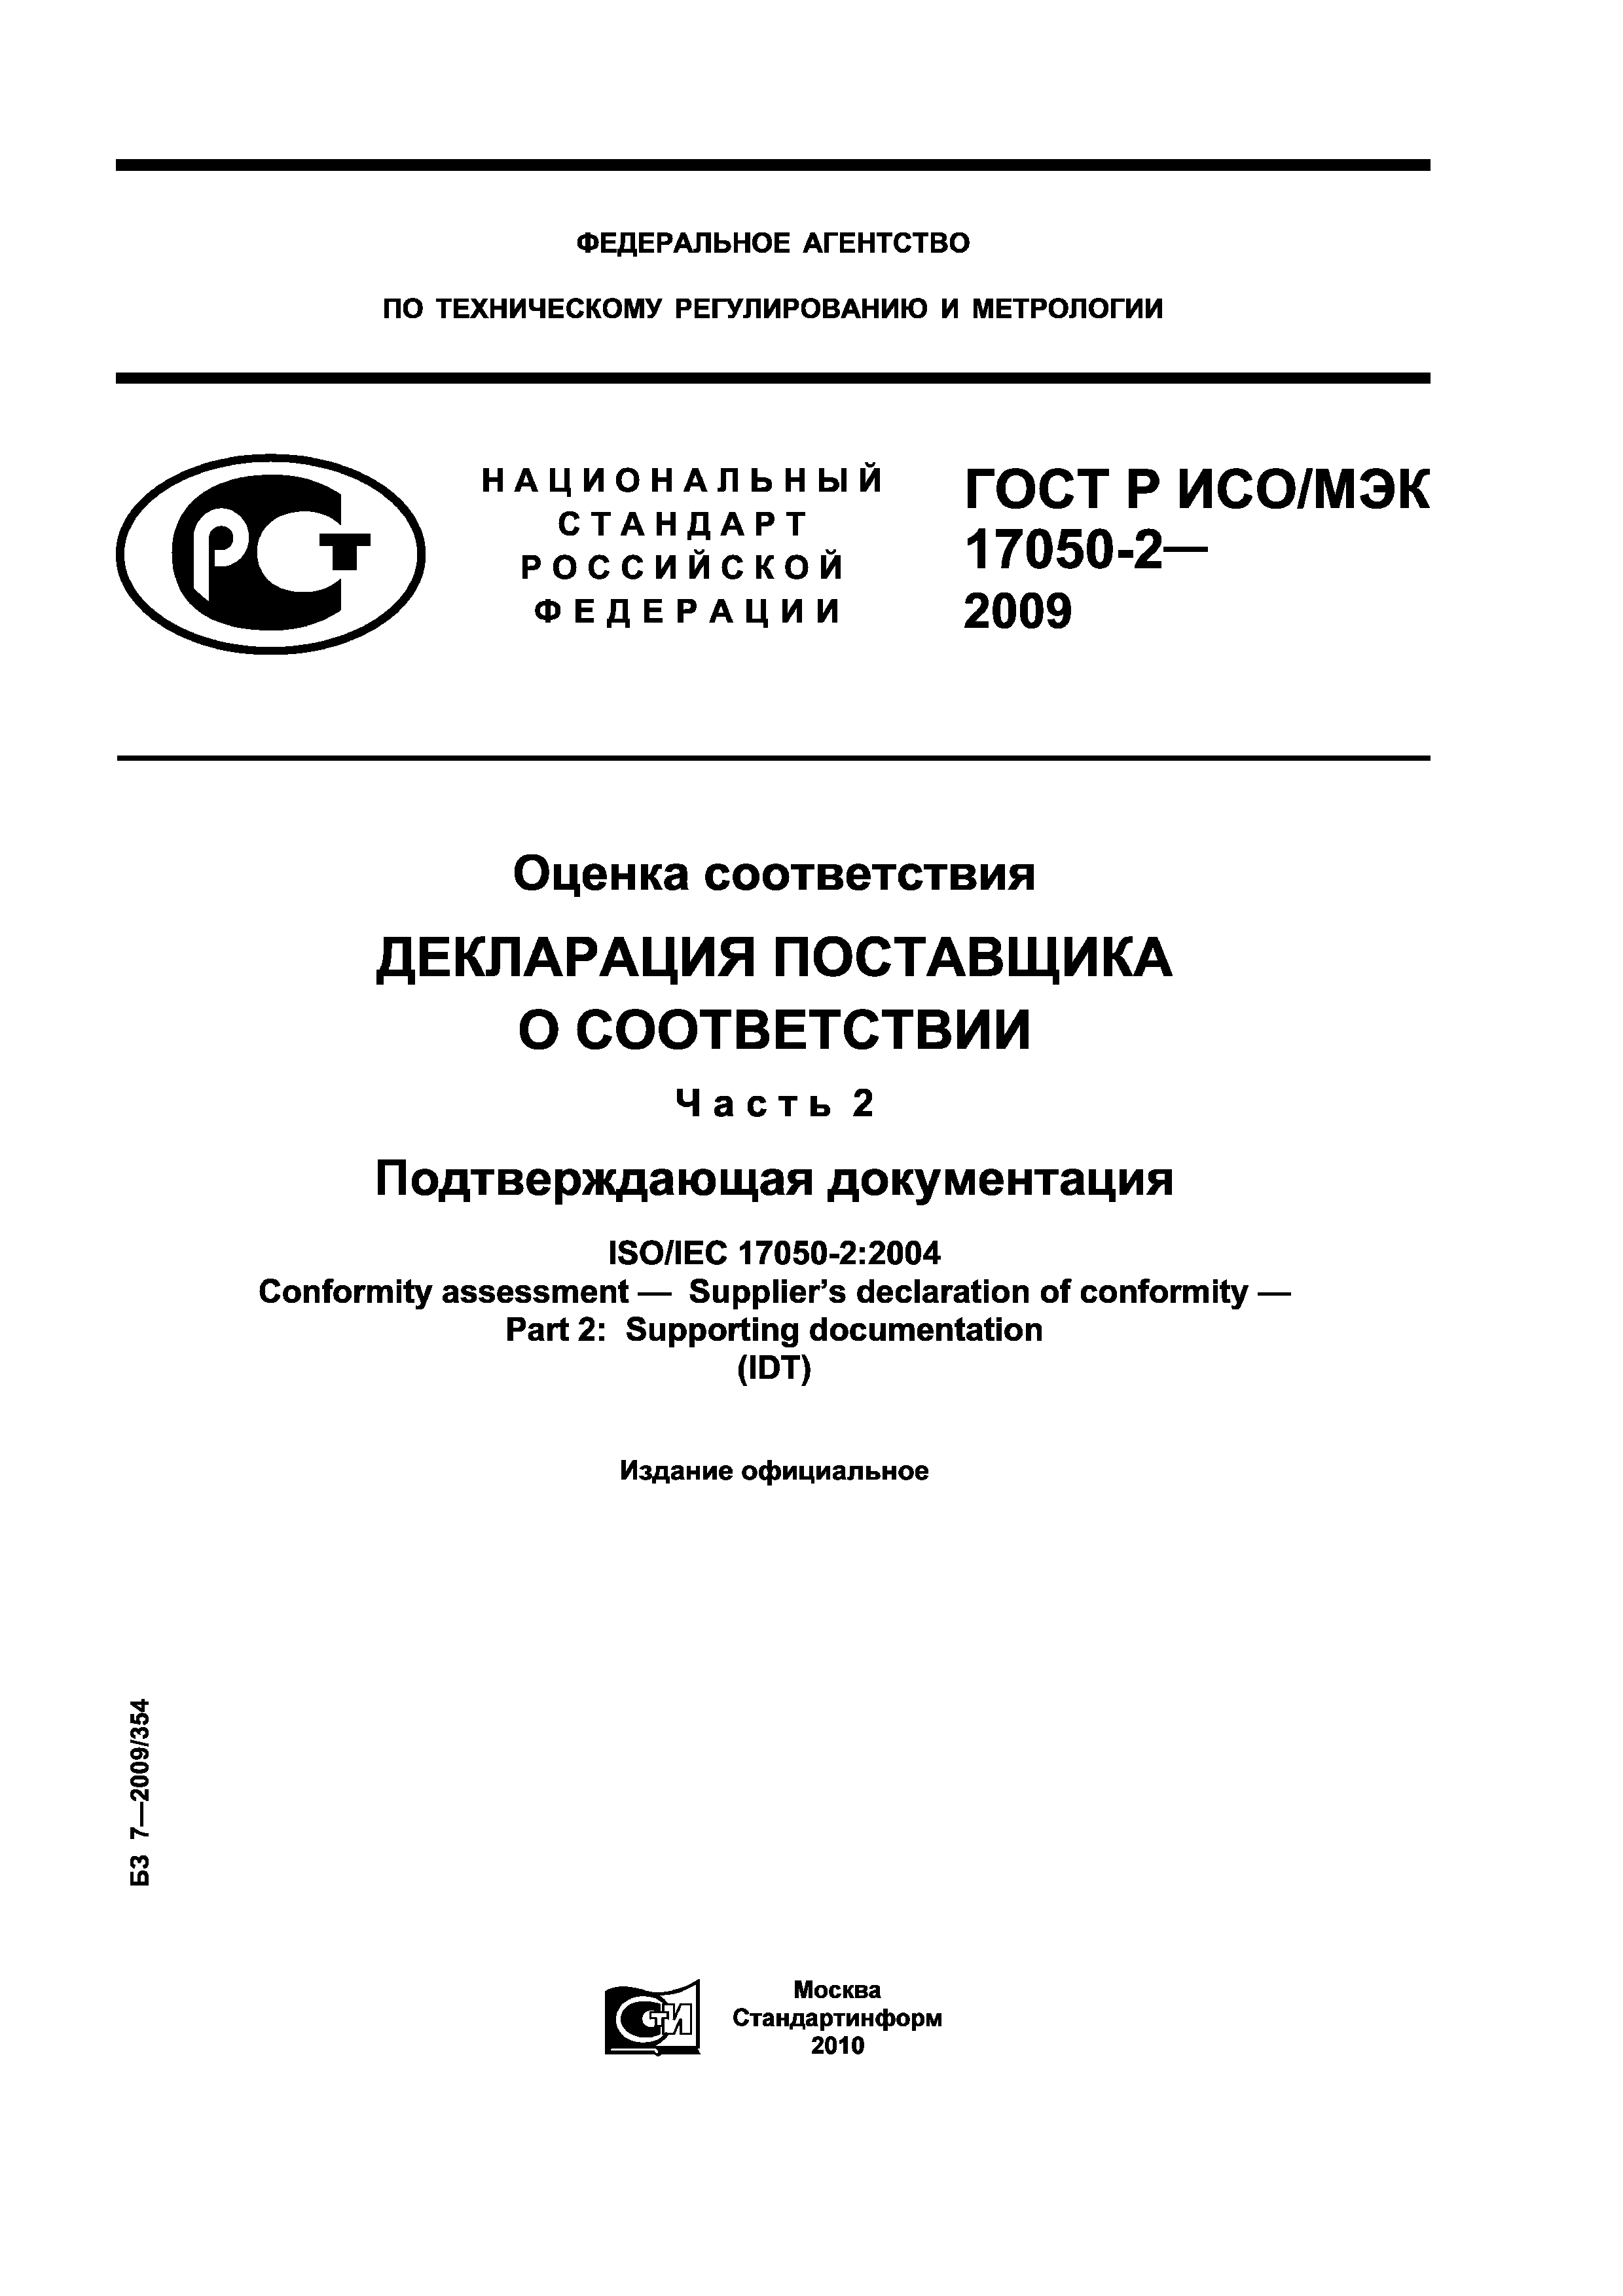 ГОСТ Р ИСО/МЭК 17050-2-2009